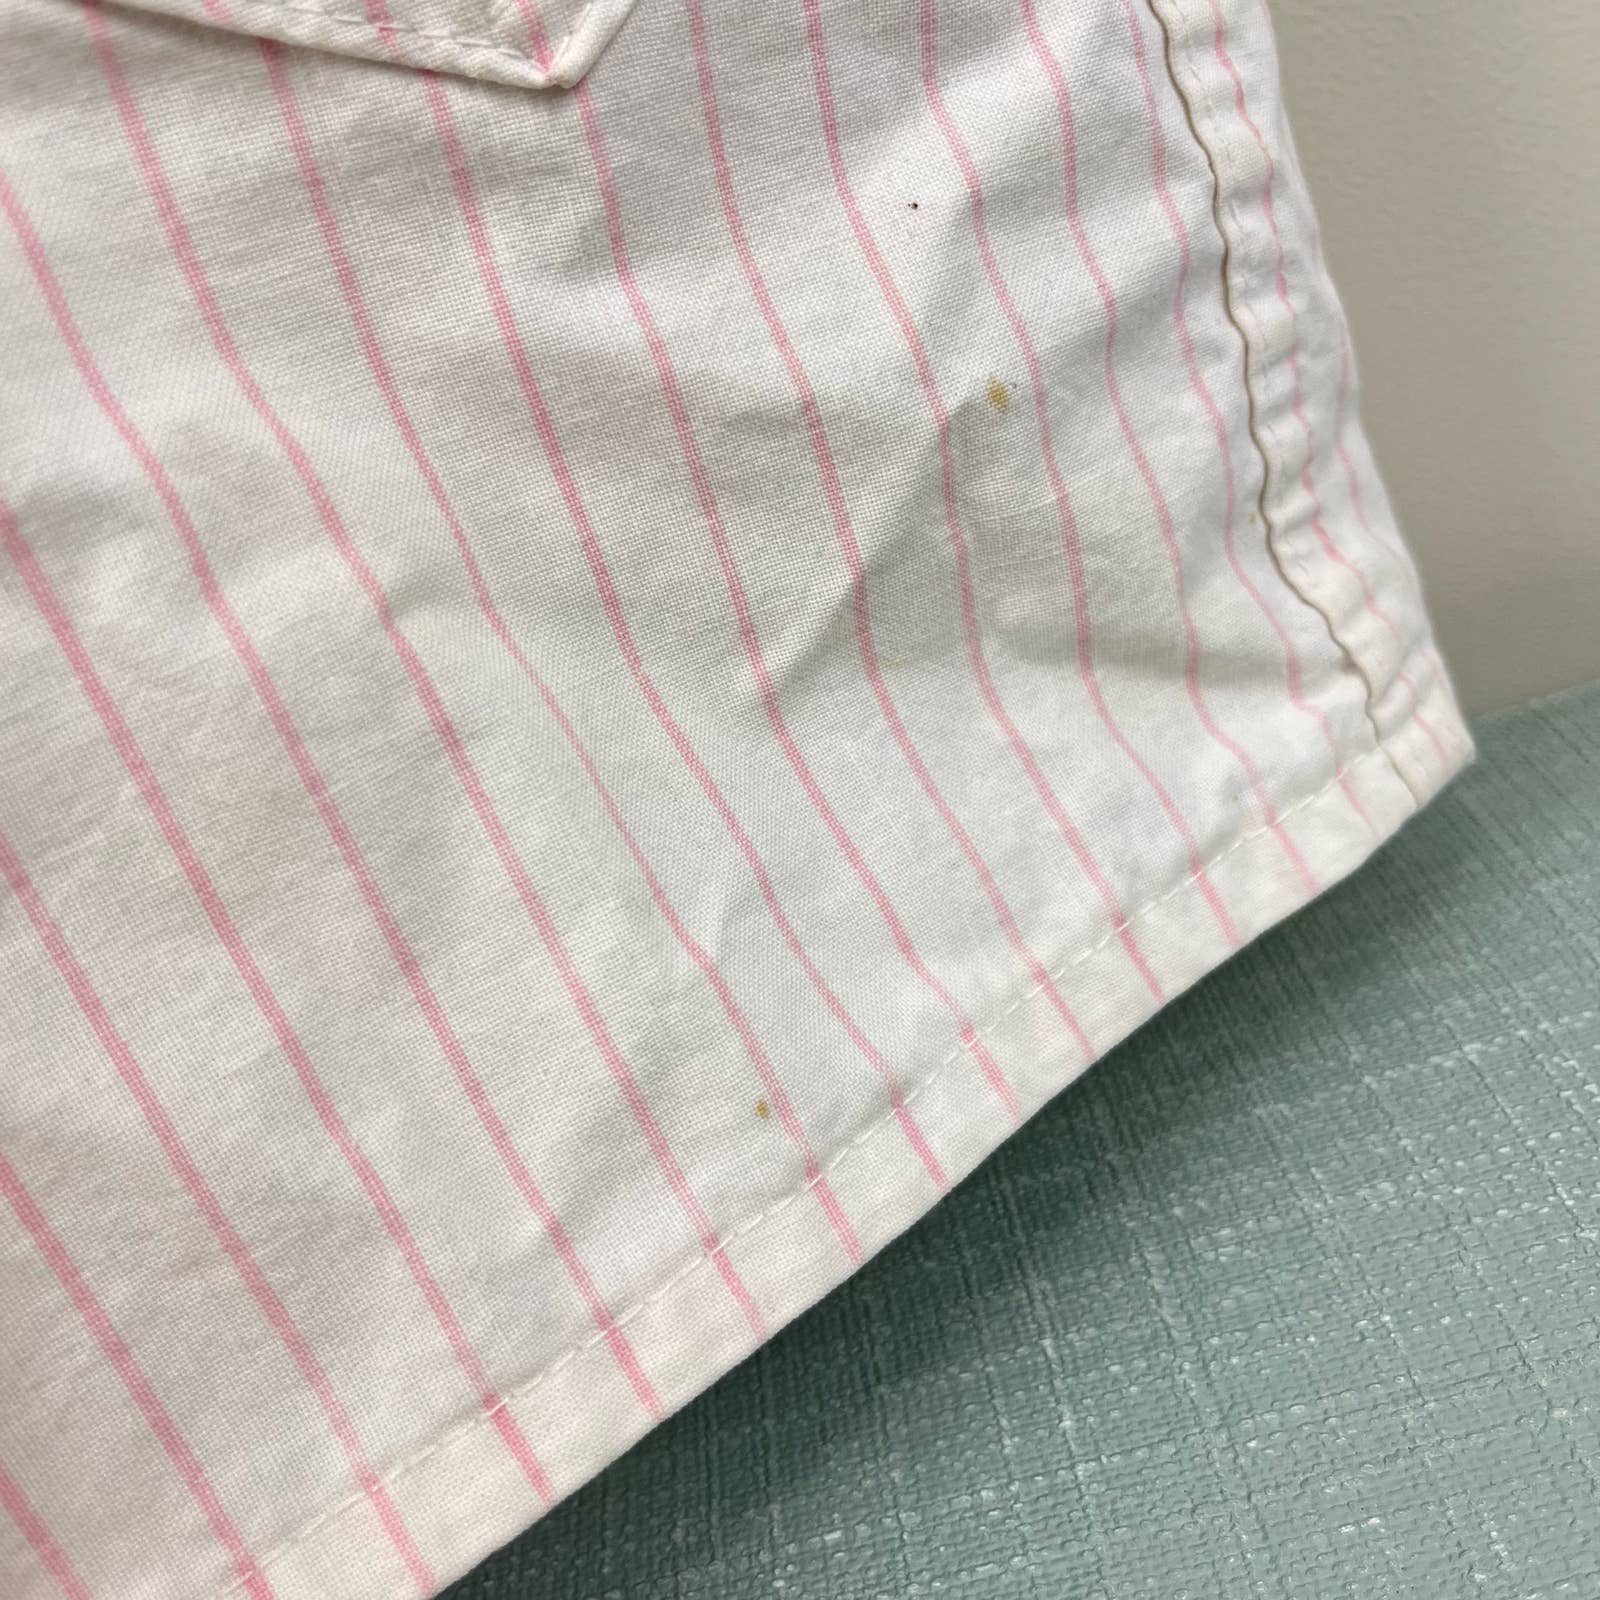 Vintage OshKosh B'gosh Pink Striped Shortalls 7/8 USA